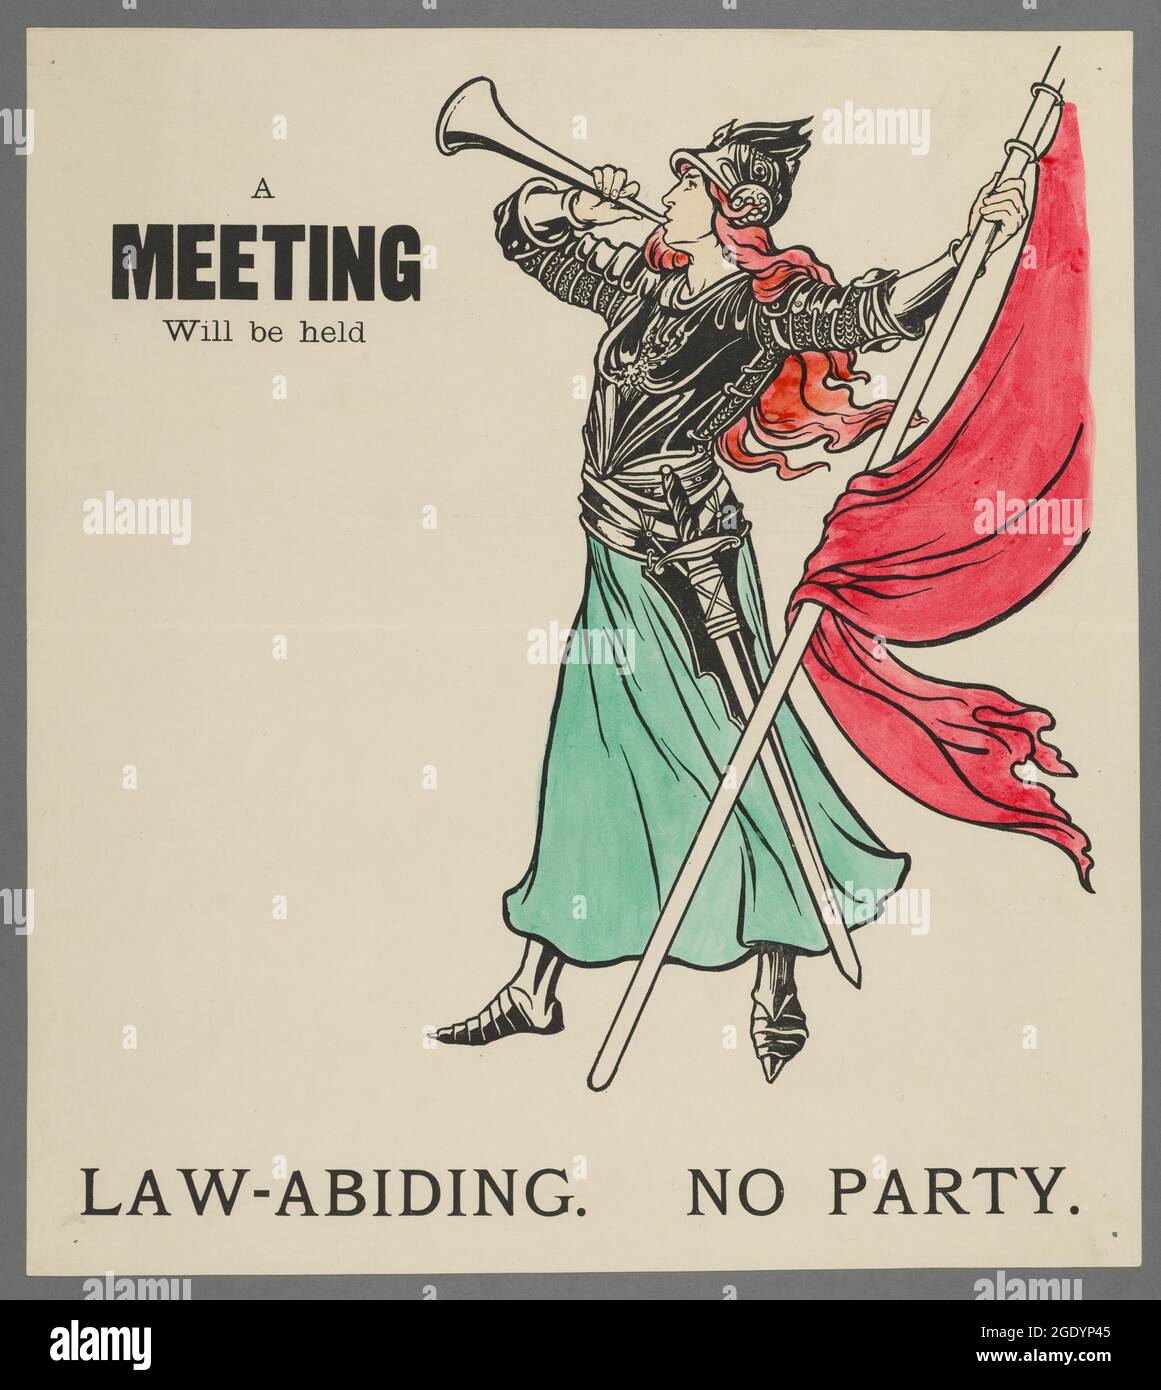 Affiche de suffrage: Une réunion aura lieu. Respect des lois. Pas de fête. Banque D'Images